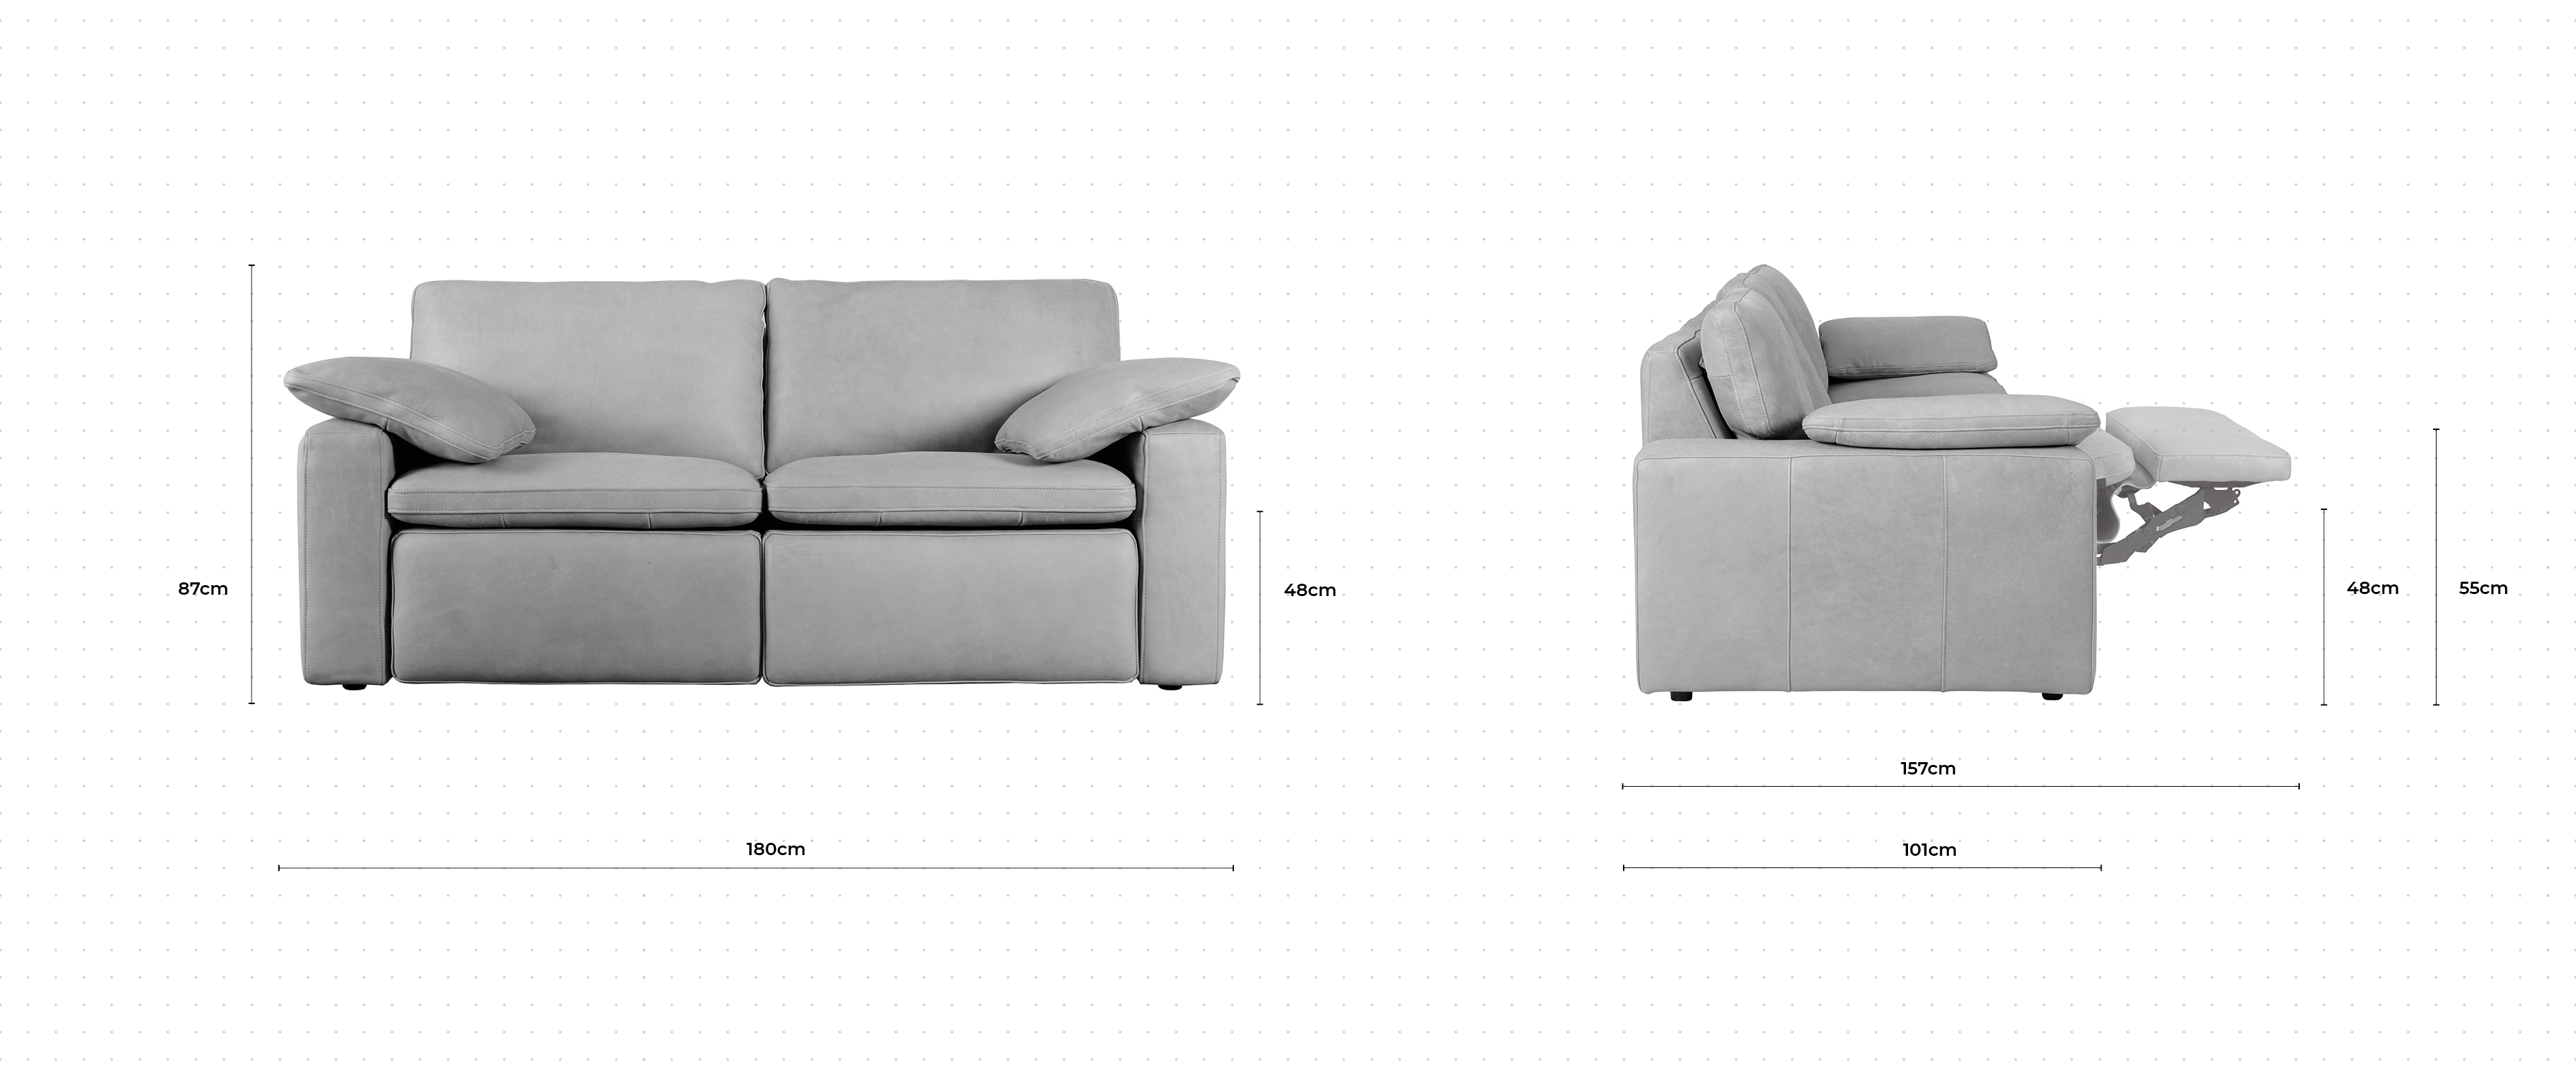 Martin 2 Seater Sofa dimensions